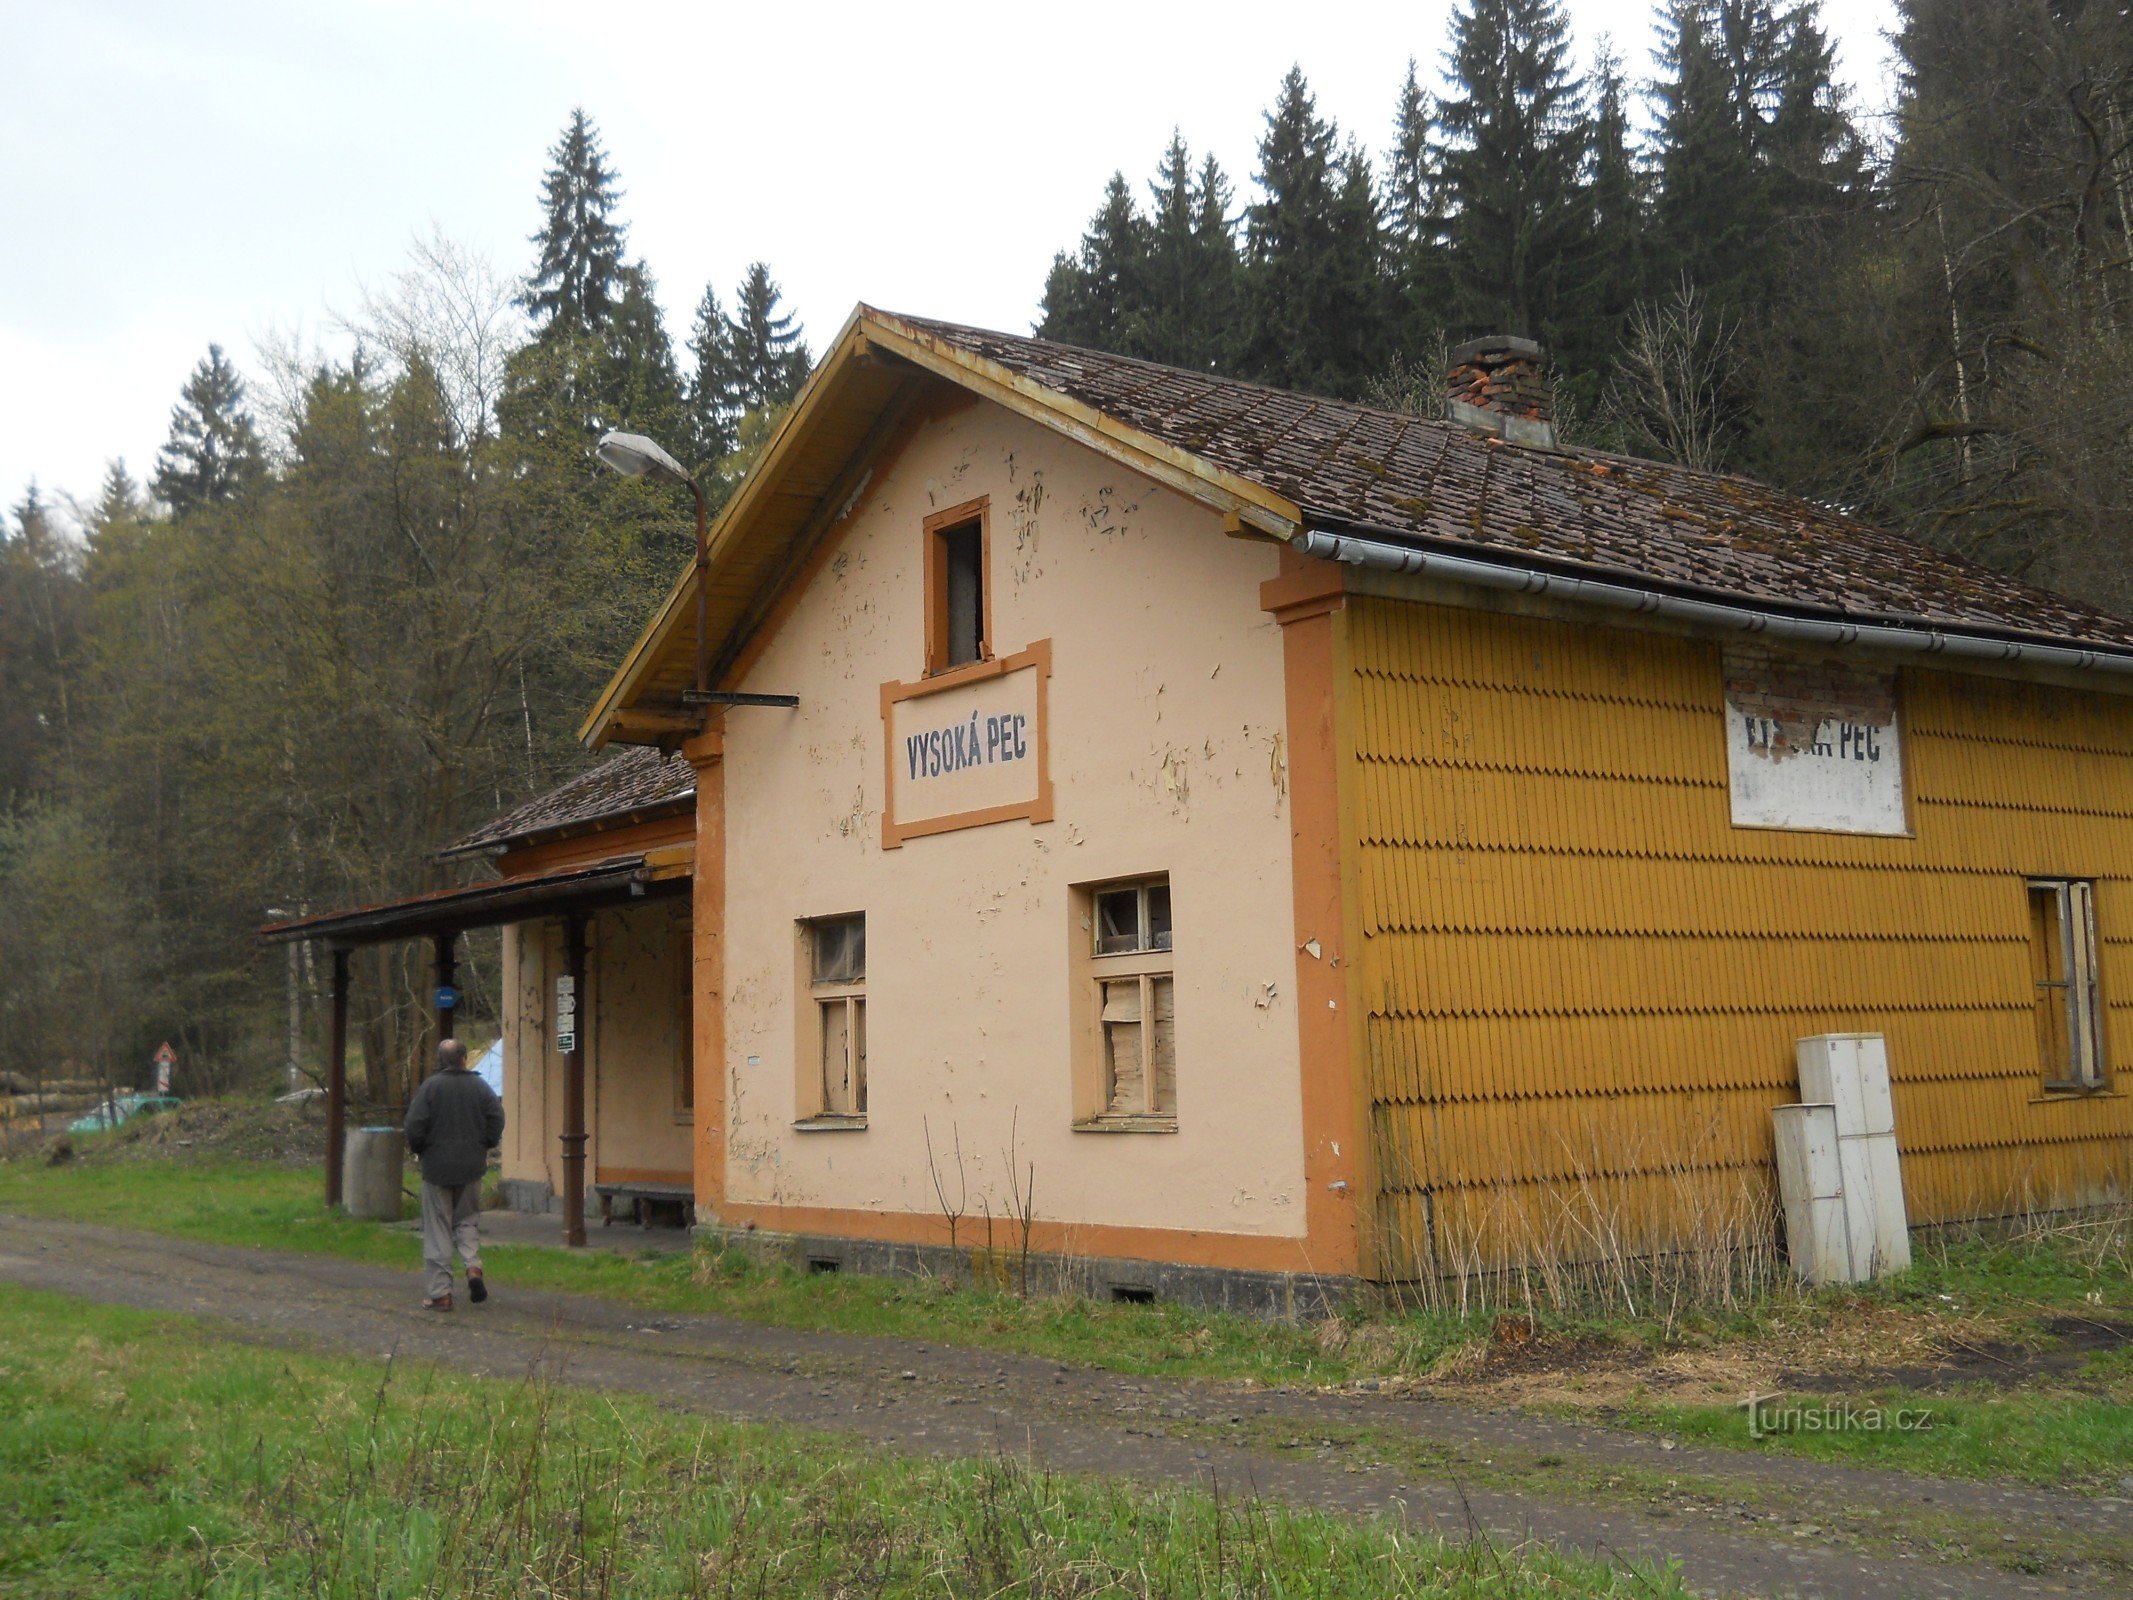 Stazione di Vysoká Pec